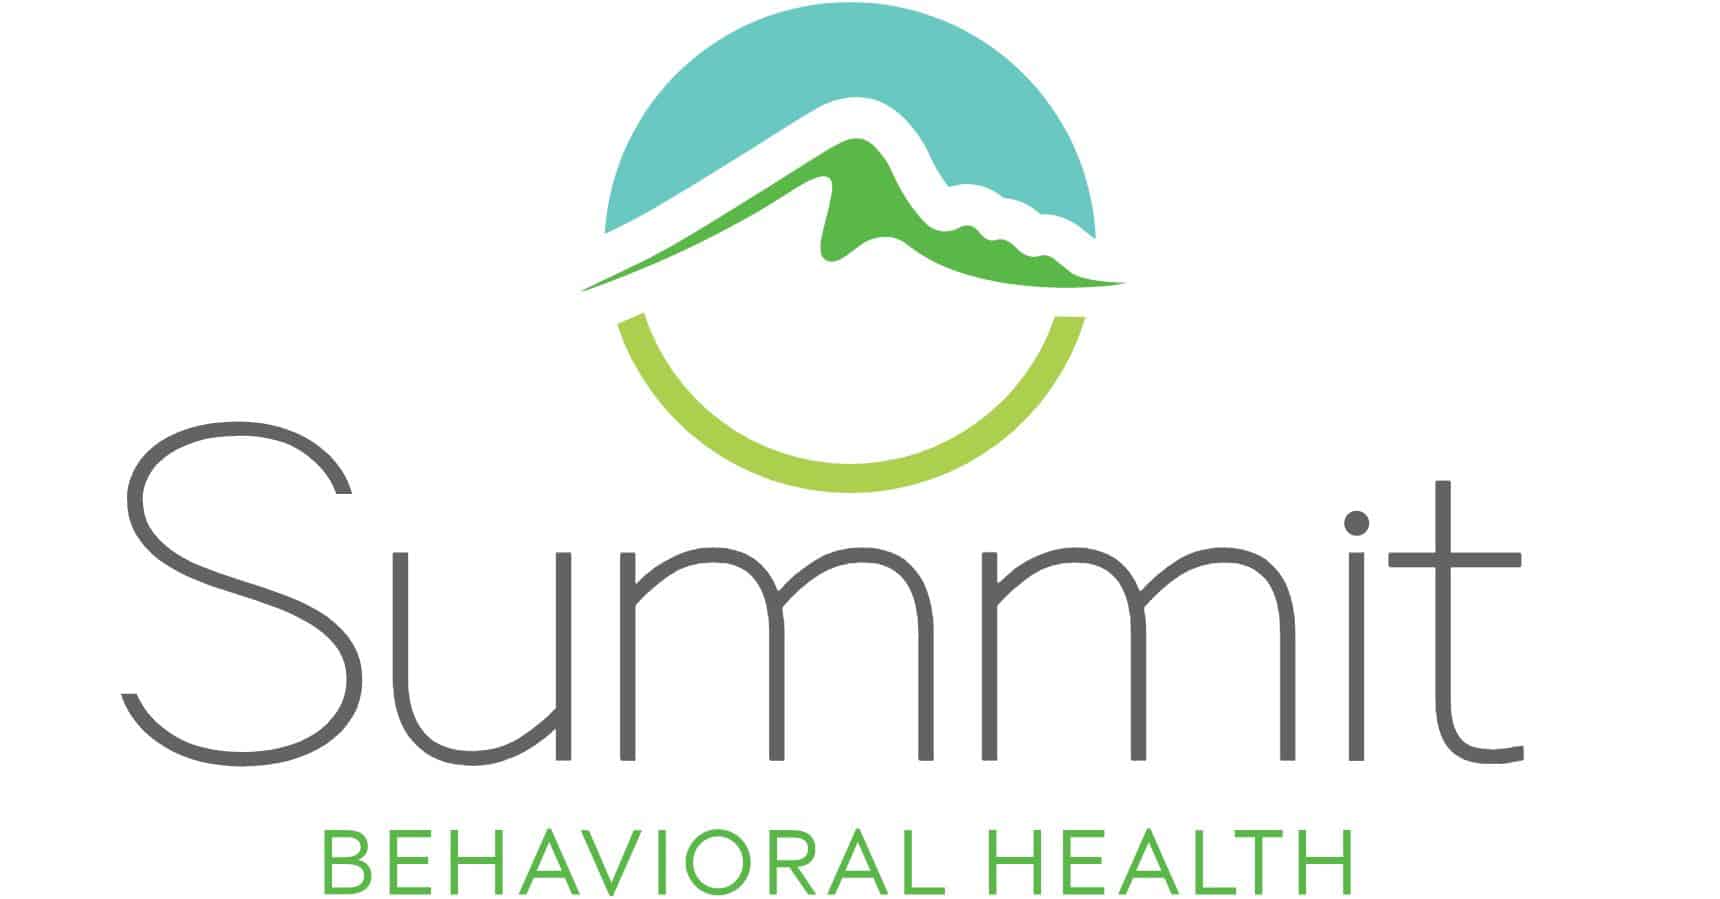 Summit Behavioral Health